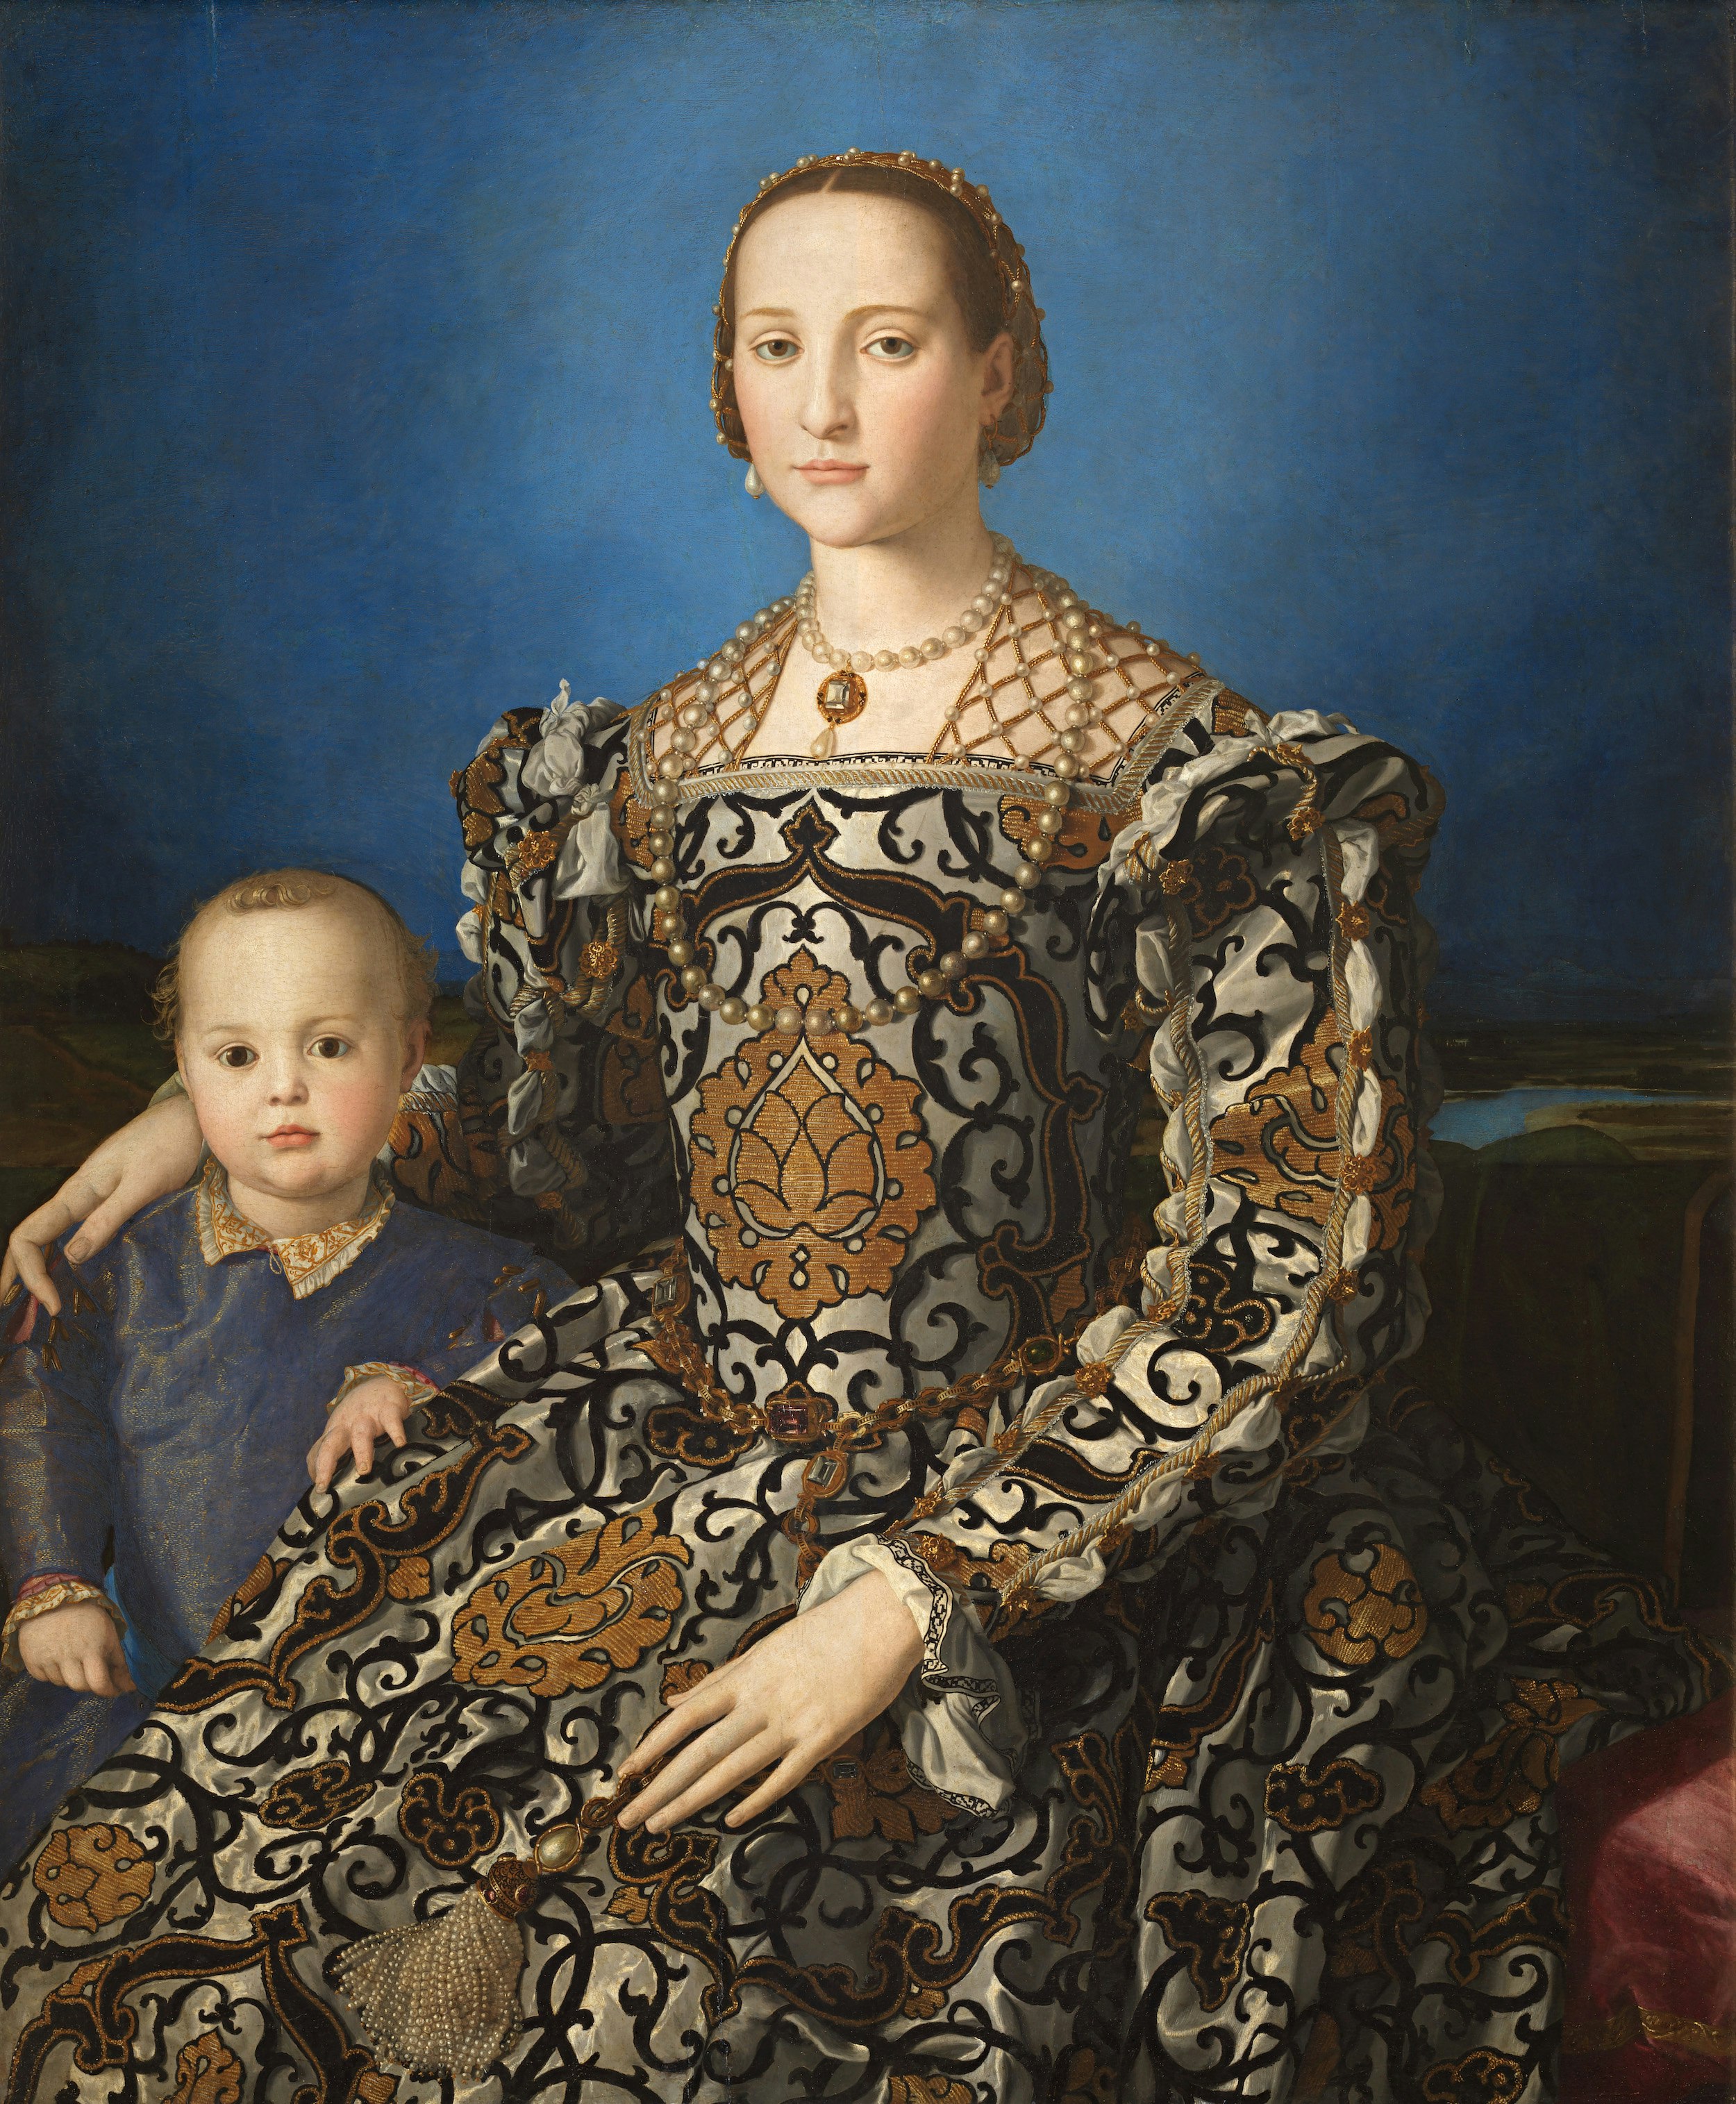 Portrait of Eleonora di Toledo with her son Giovanni